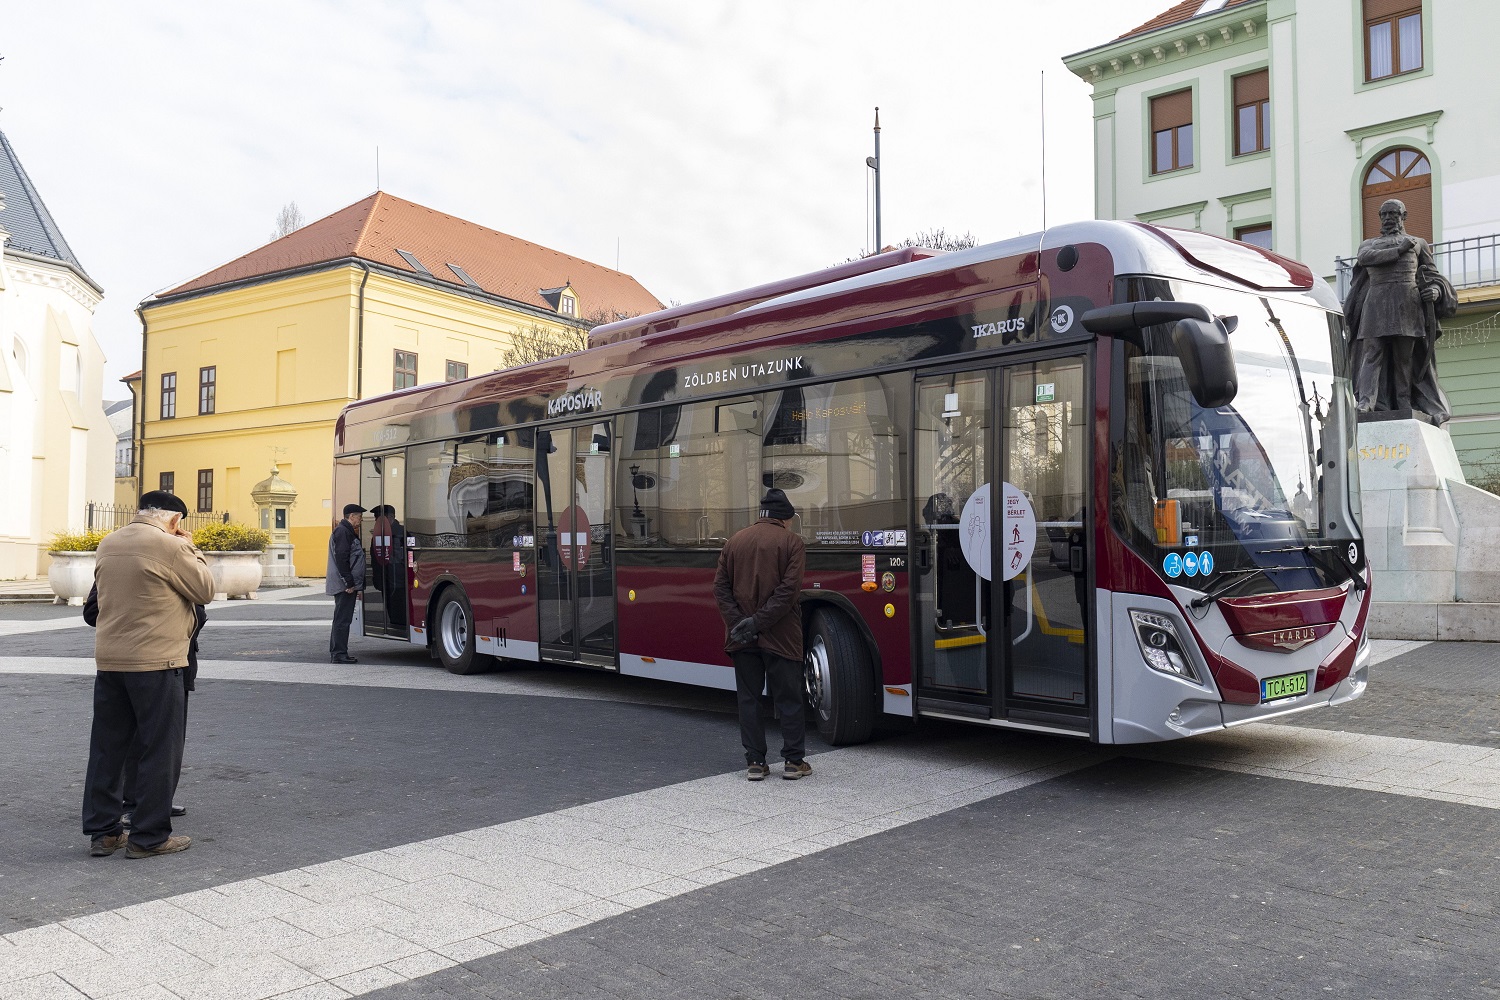 Átadták Kaposvár első elektromos autóbuszait